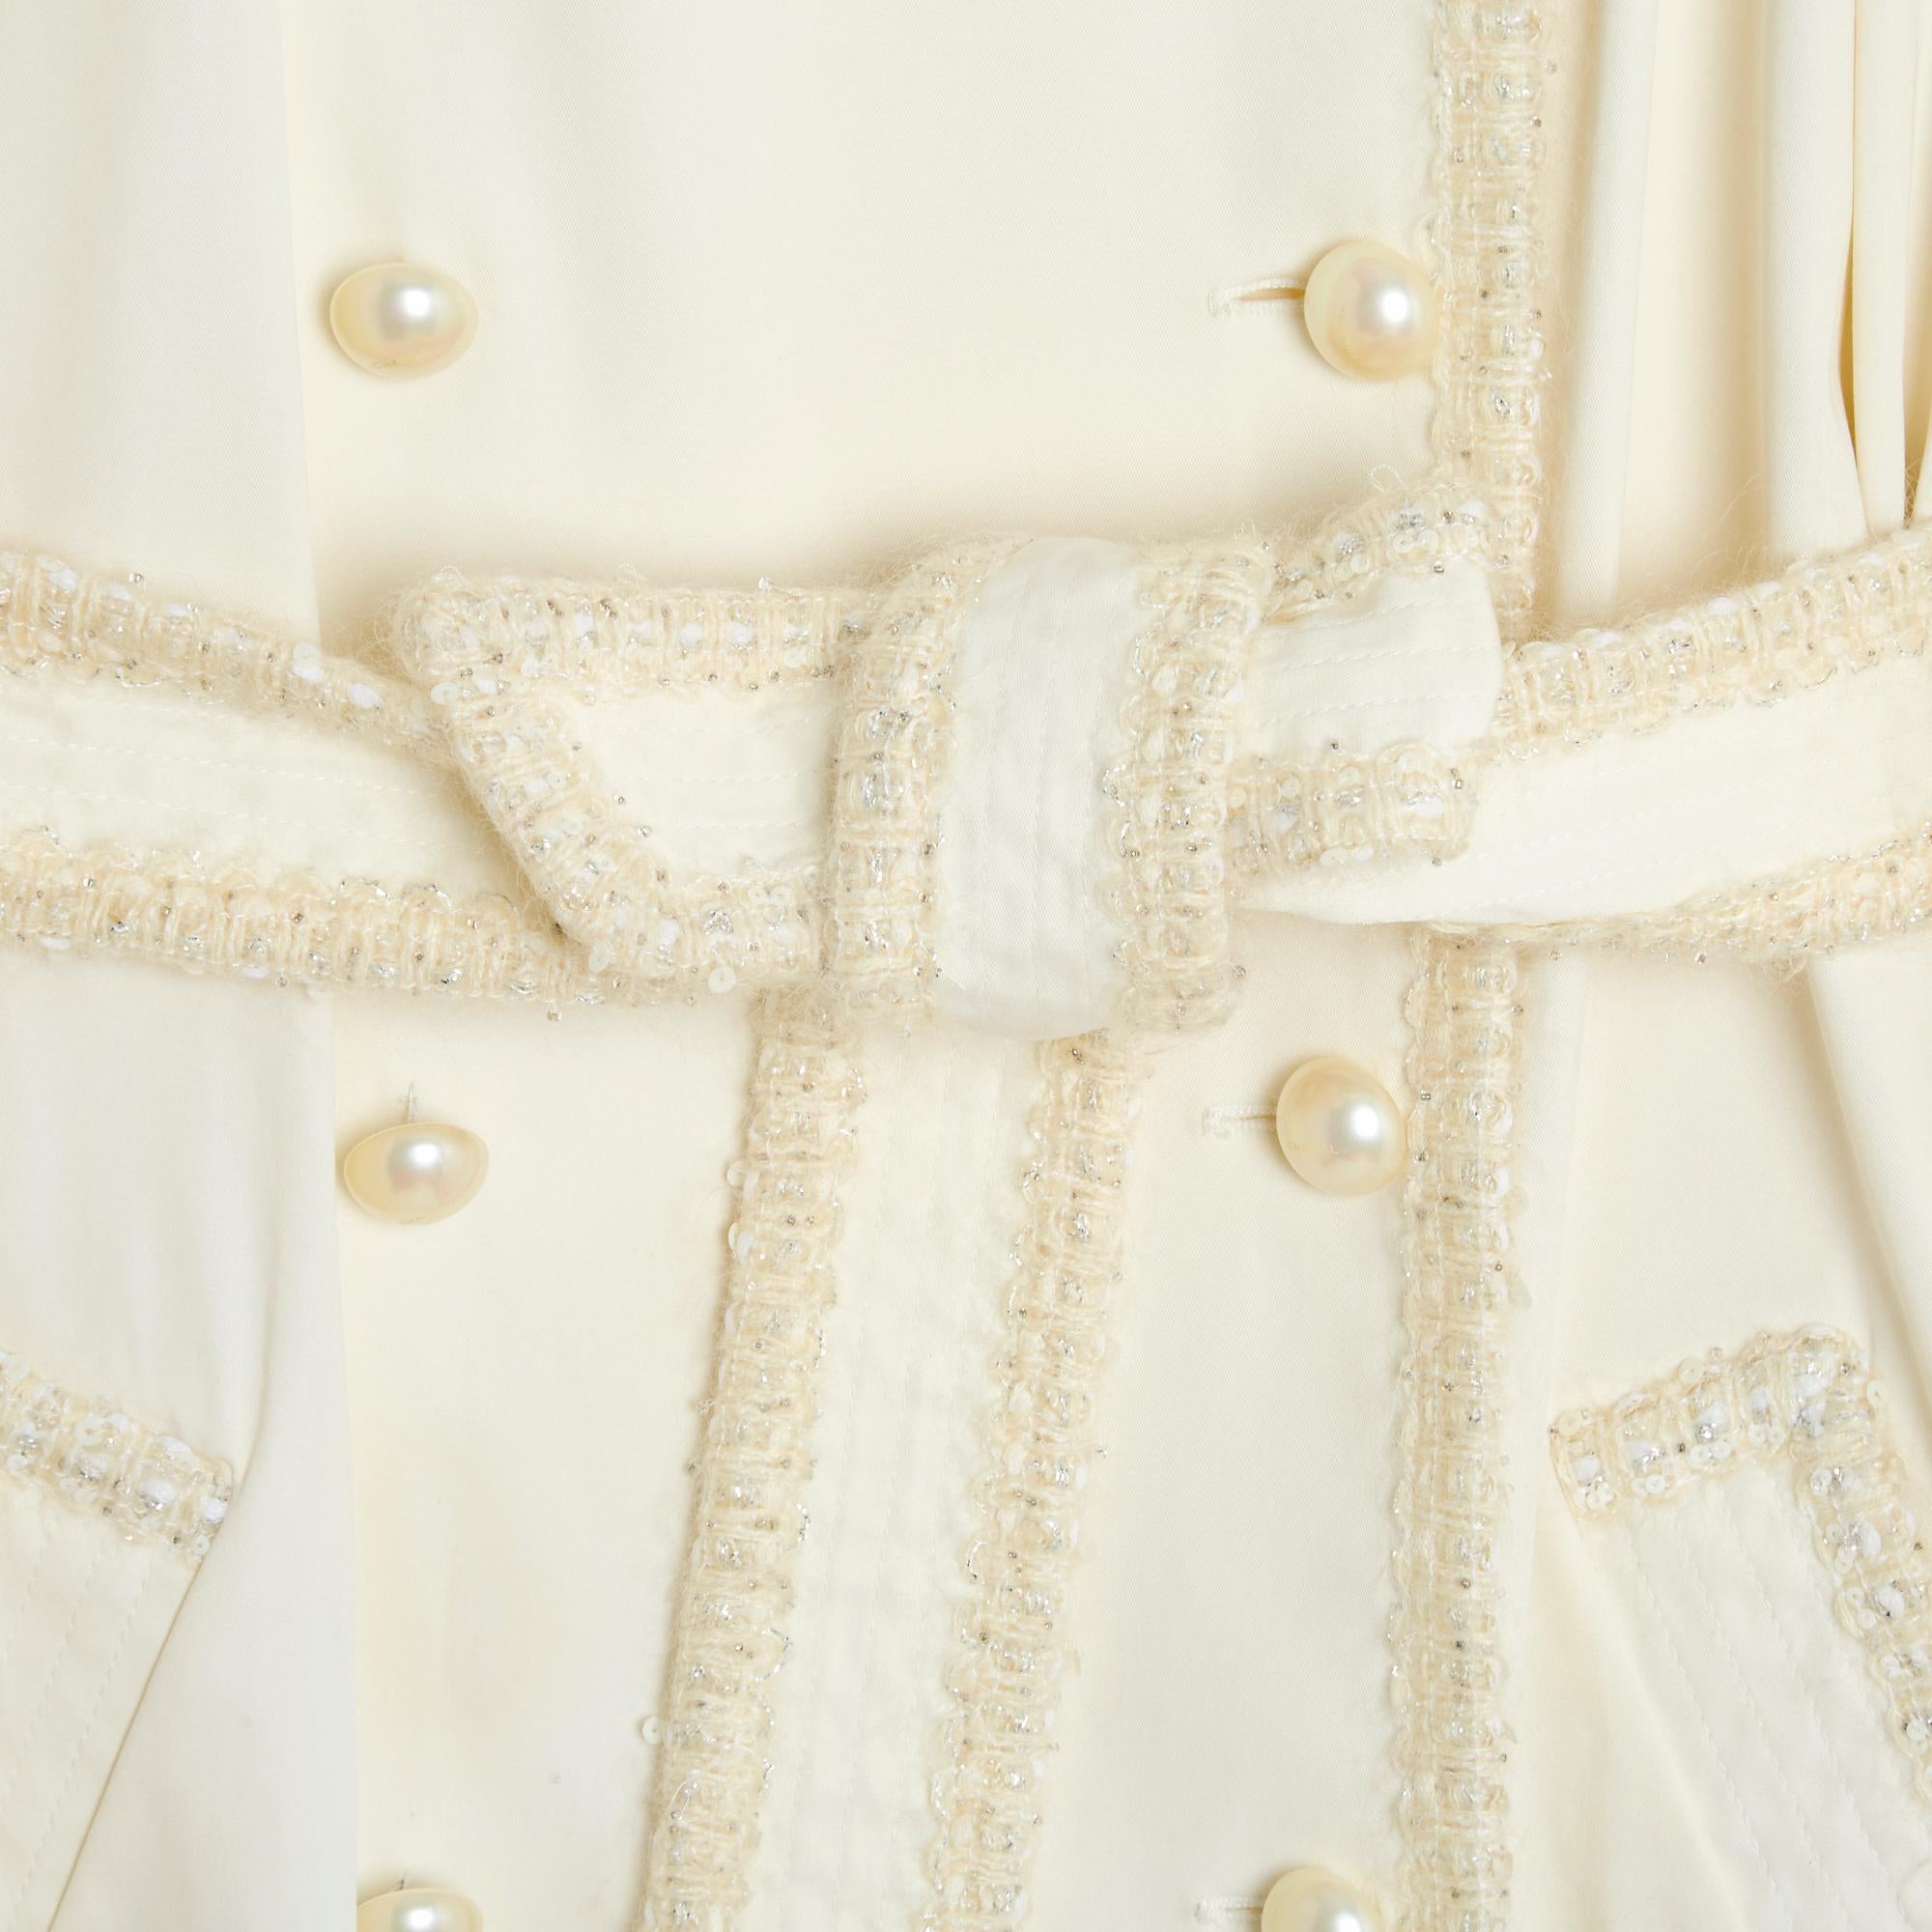 Trenchcoat der Collection RE2006 von Chanel aus ecrufarbenem Gabardine-Baumwollgemisch, abgesetzt mit passendem Tweed mit Pailletten und Silberfäden, breiter, gekerbter Kragen, geschlossen mit doppelter Brust, Schulterlaschen und Verschlusslaschen